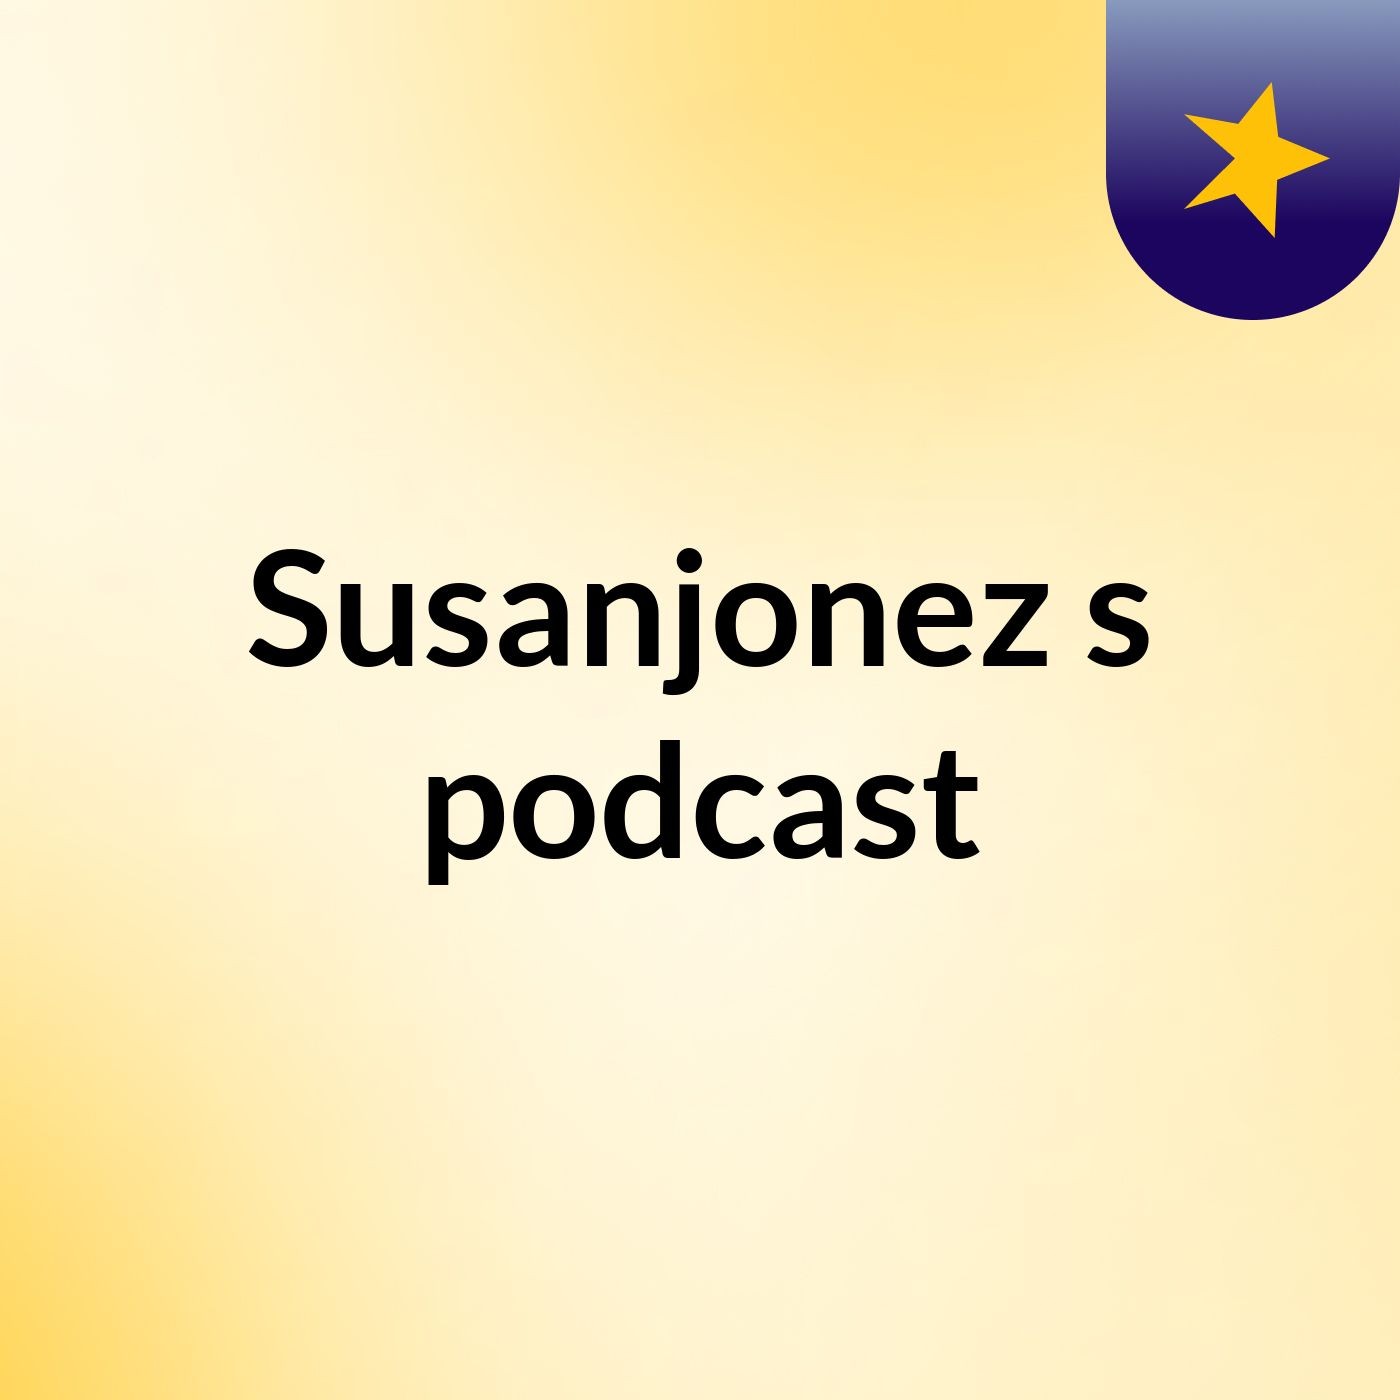 Susanjonez's podcast